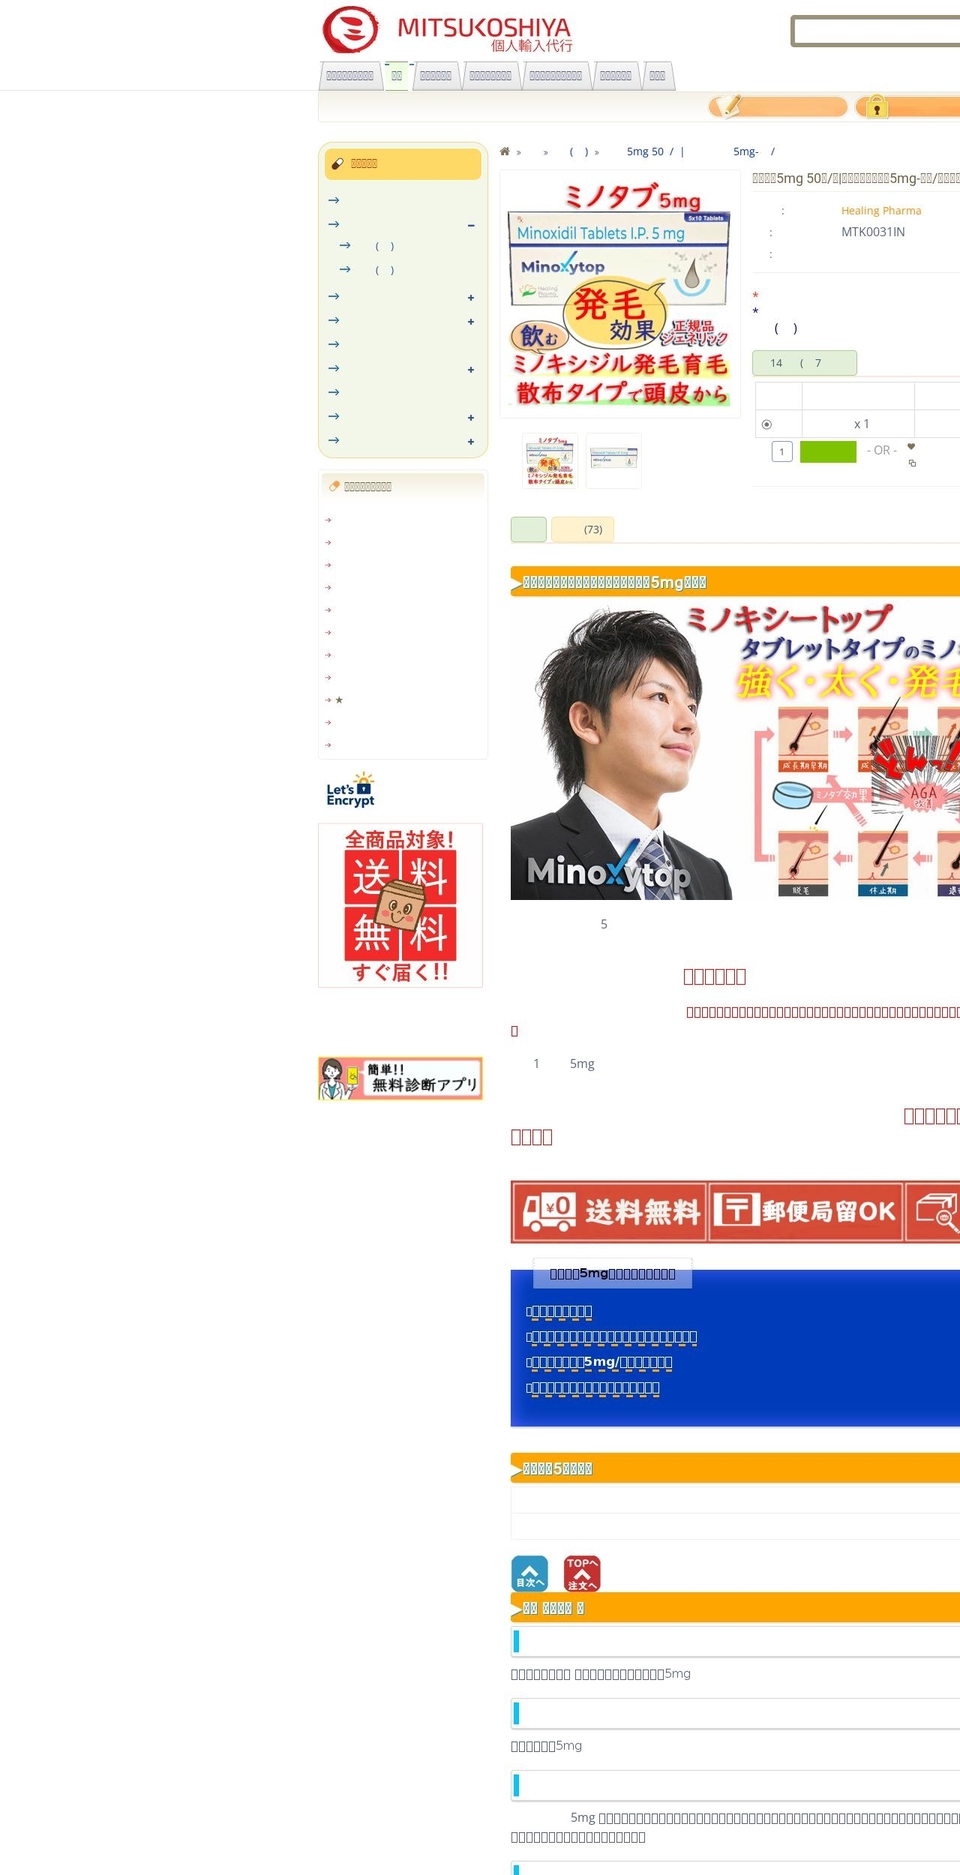 holoholo.tokyo shopify website screenshot